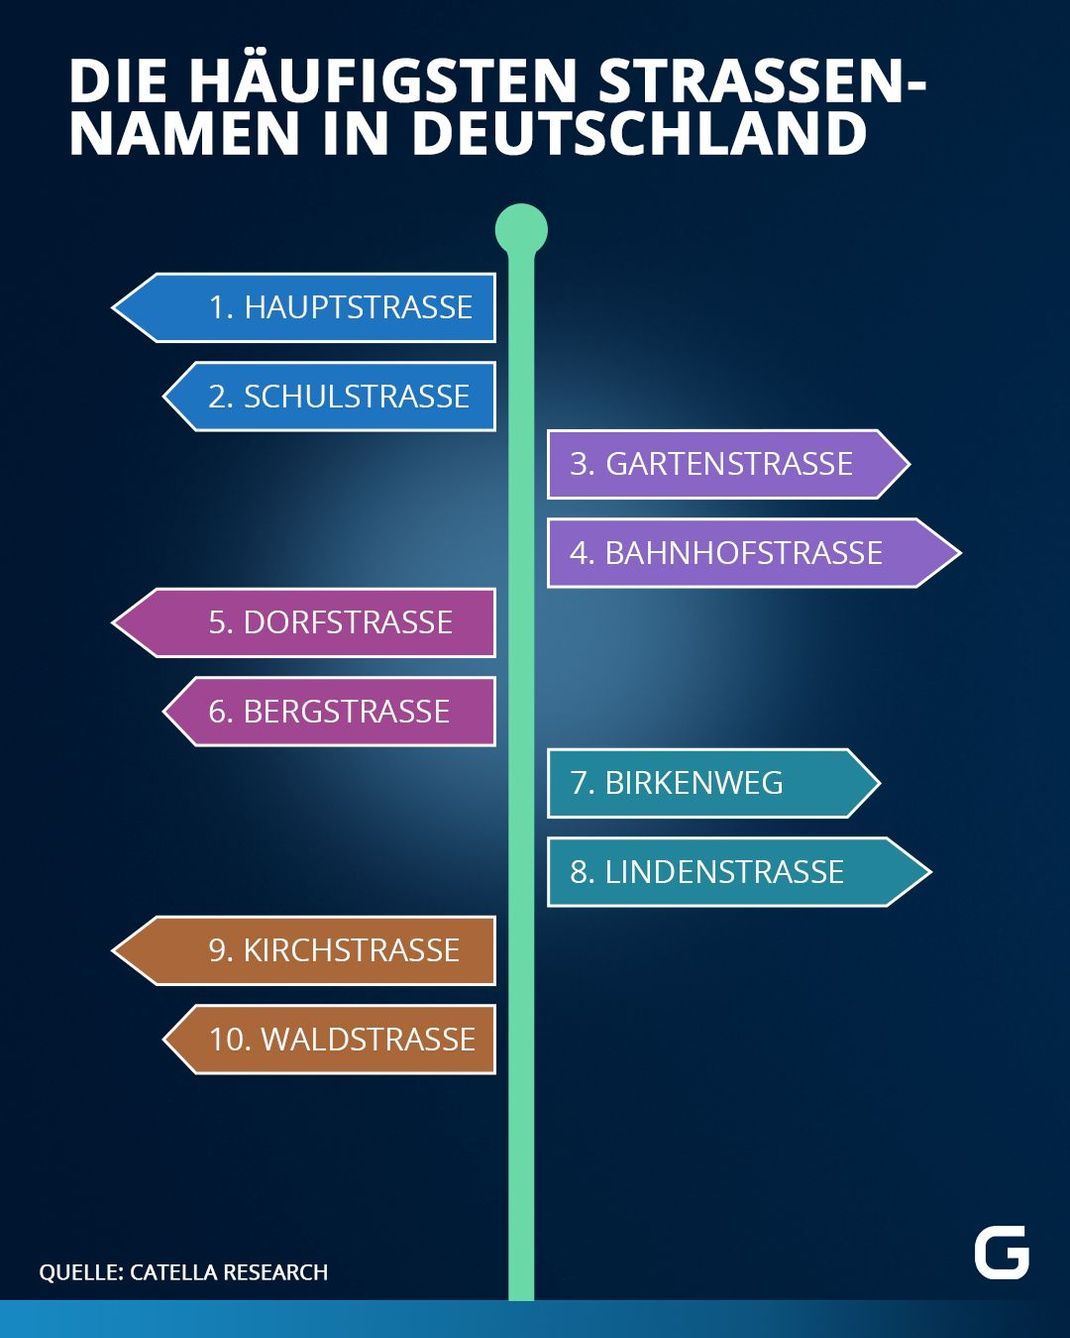 Die Grafik zeigt die zehn häufigsten Straßennamen in Deutschland.